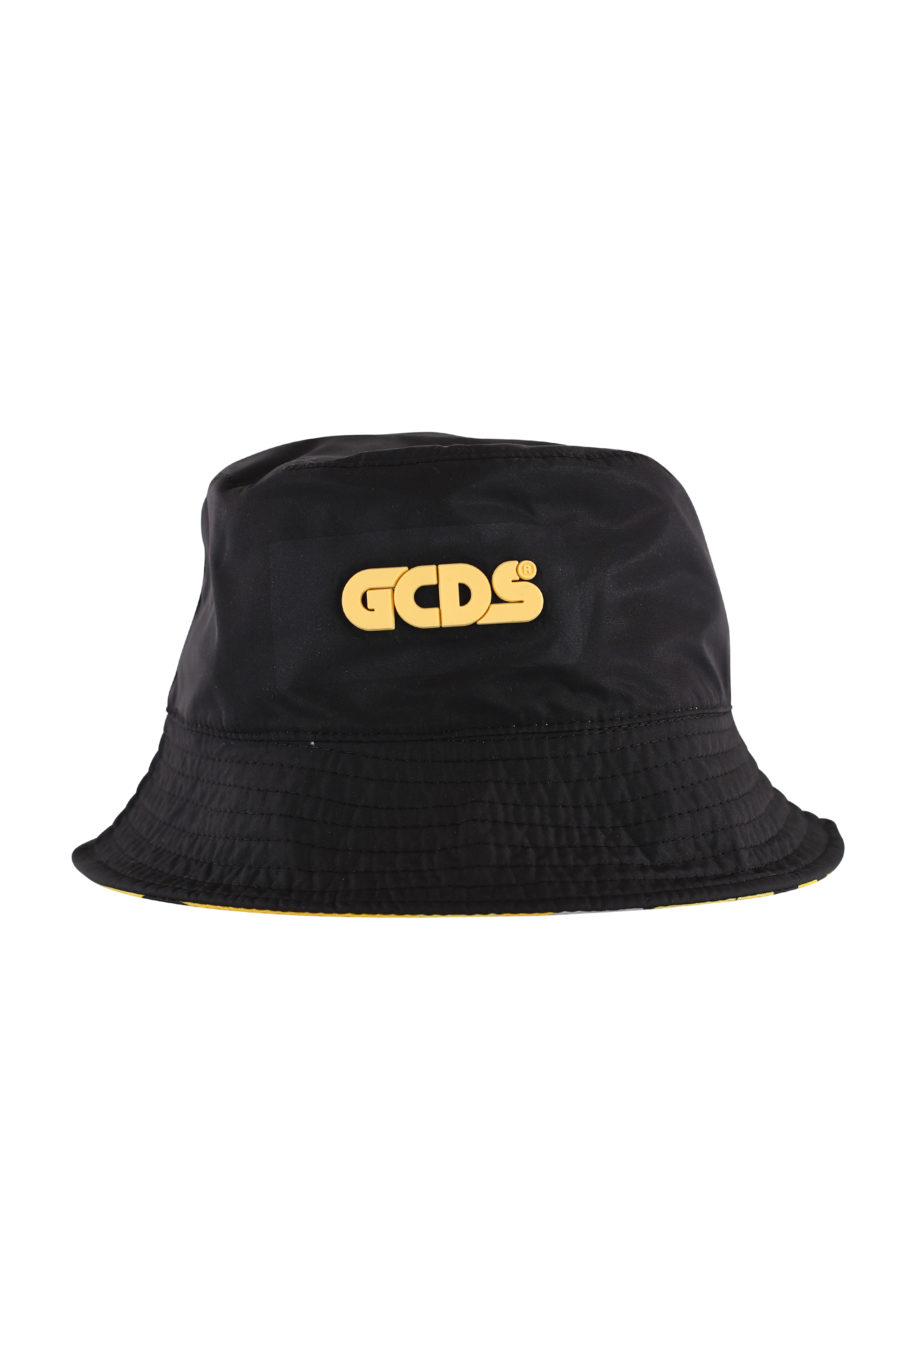 Sombrero de pescador negro reversible - IMG 1488